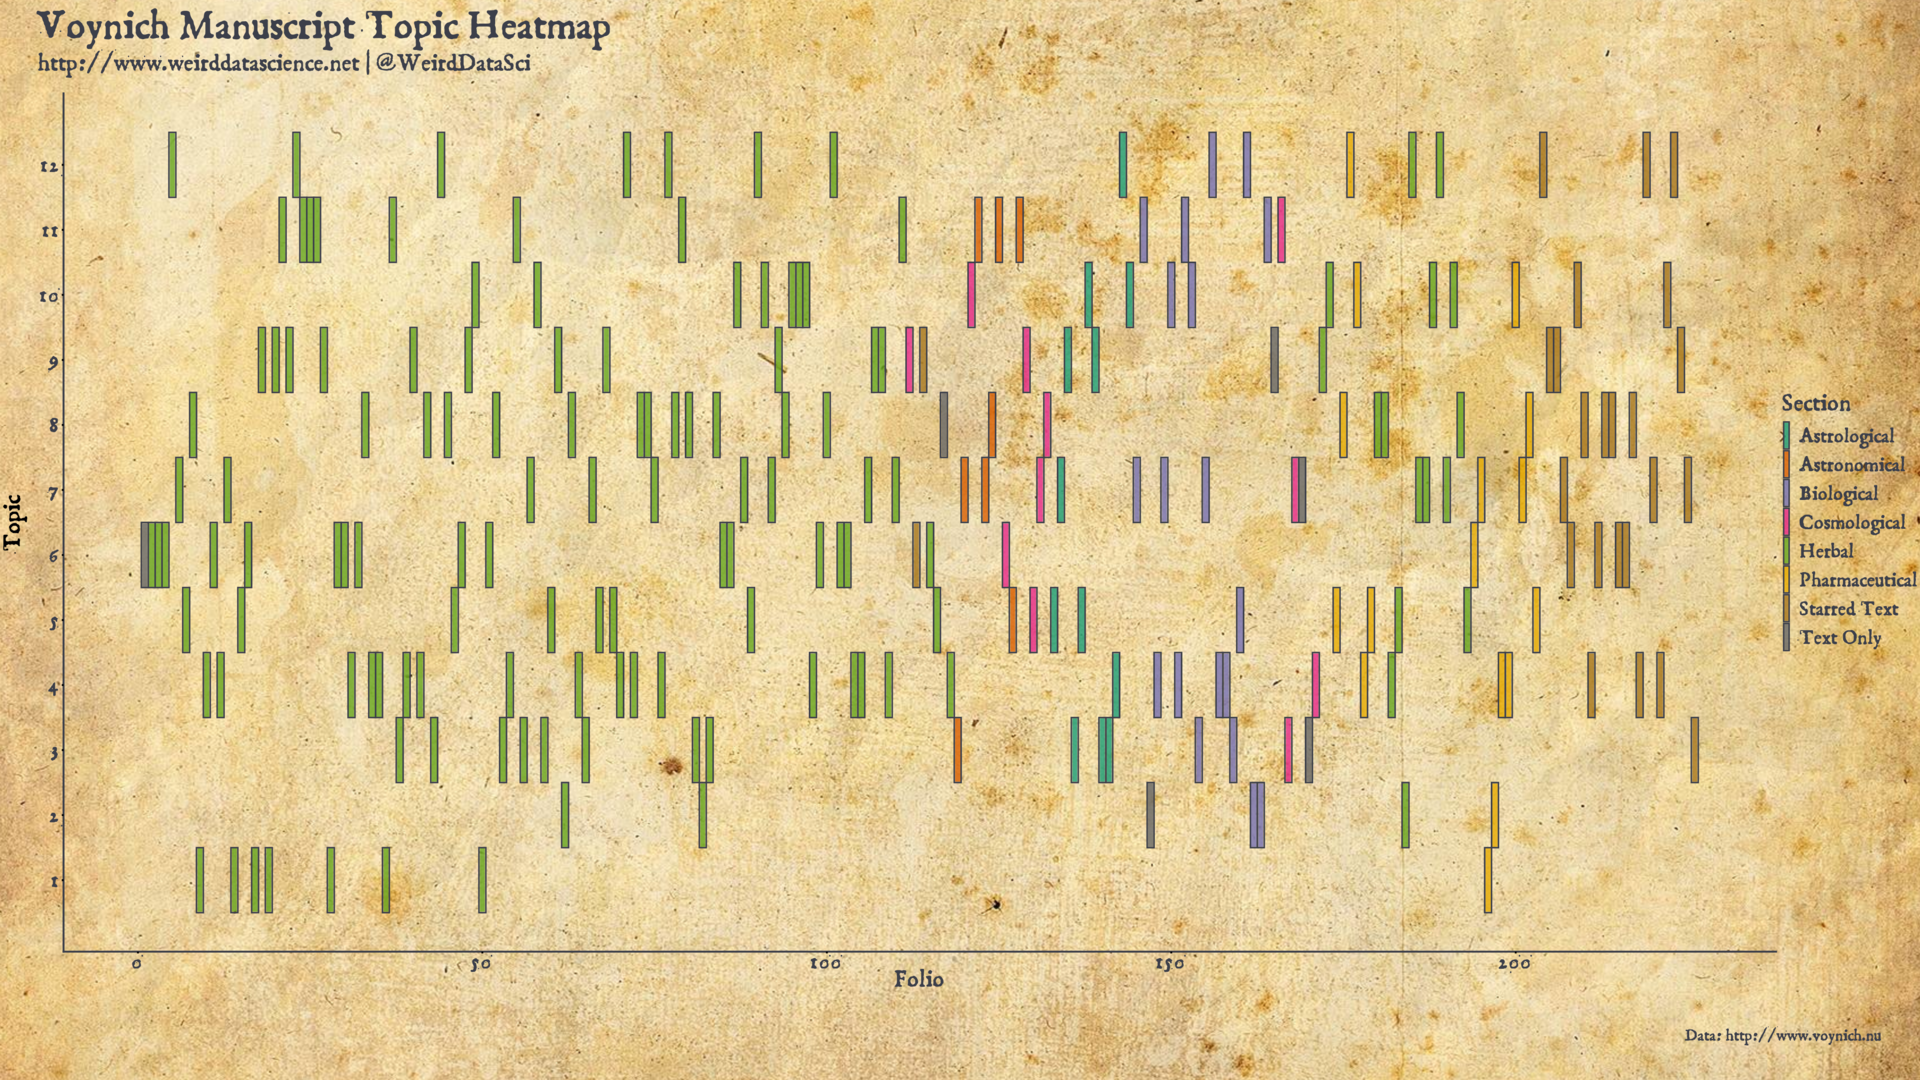 Voynich Manuscript Folio Topic Heatmap